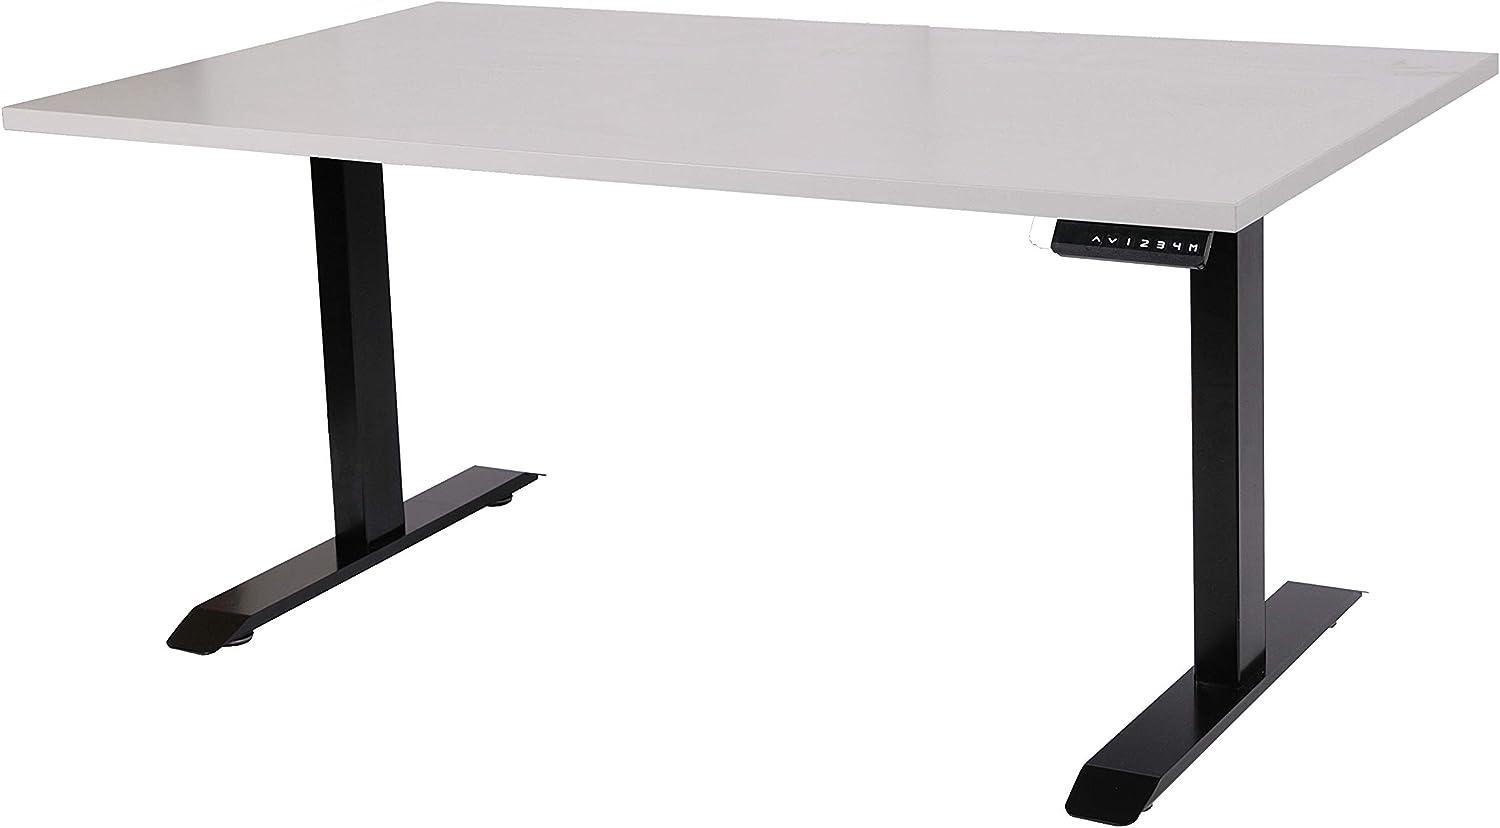 Schreibtisch stufenlos elektrisch höhenverstellbar BxTxH: 140x80x(64,5-129,5) cm schwarz, mit Memory-Funktion inkl. Tischplatte Stärke 2,5 cm (Stischgestell, Steh-Sitz Tisch) Szagato Bild 1